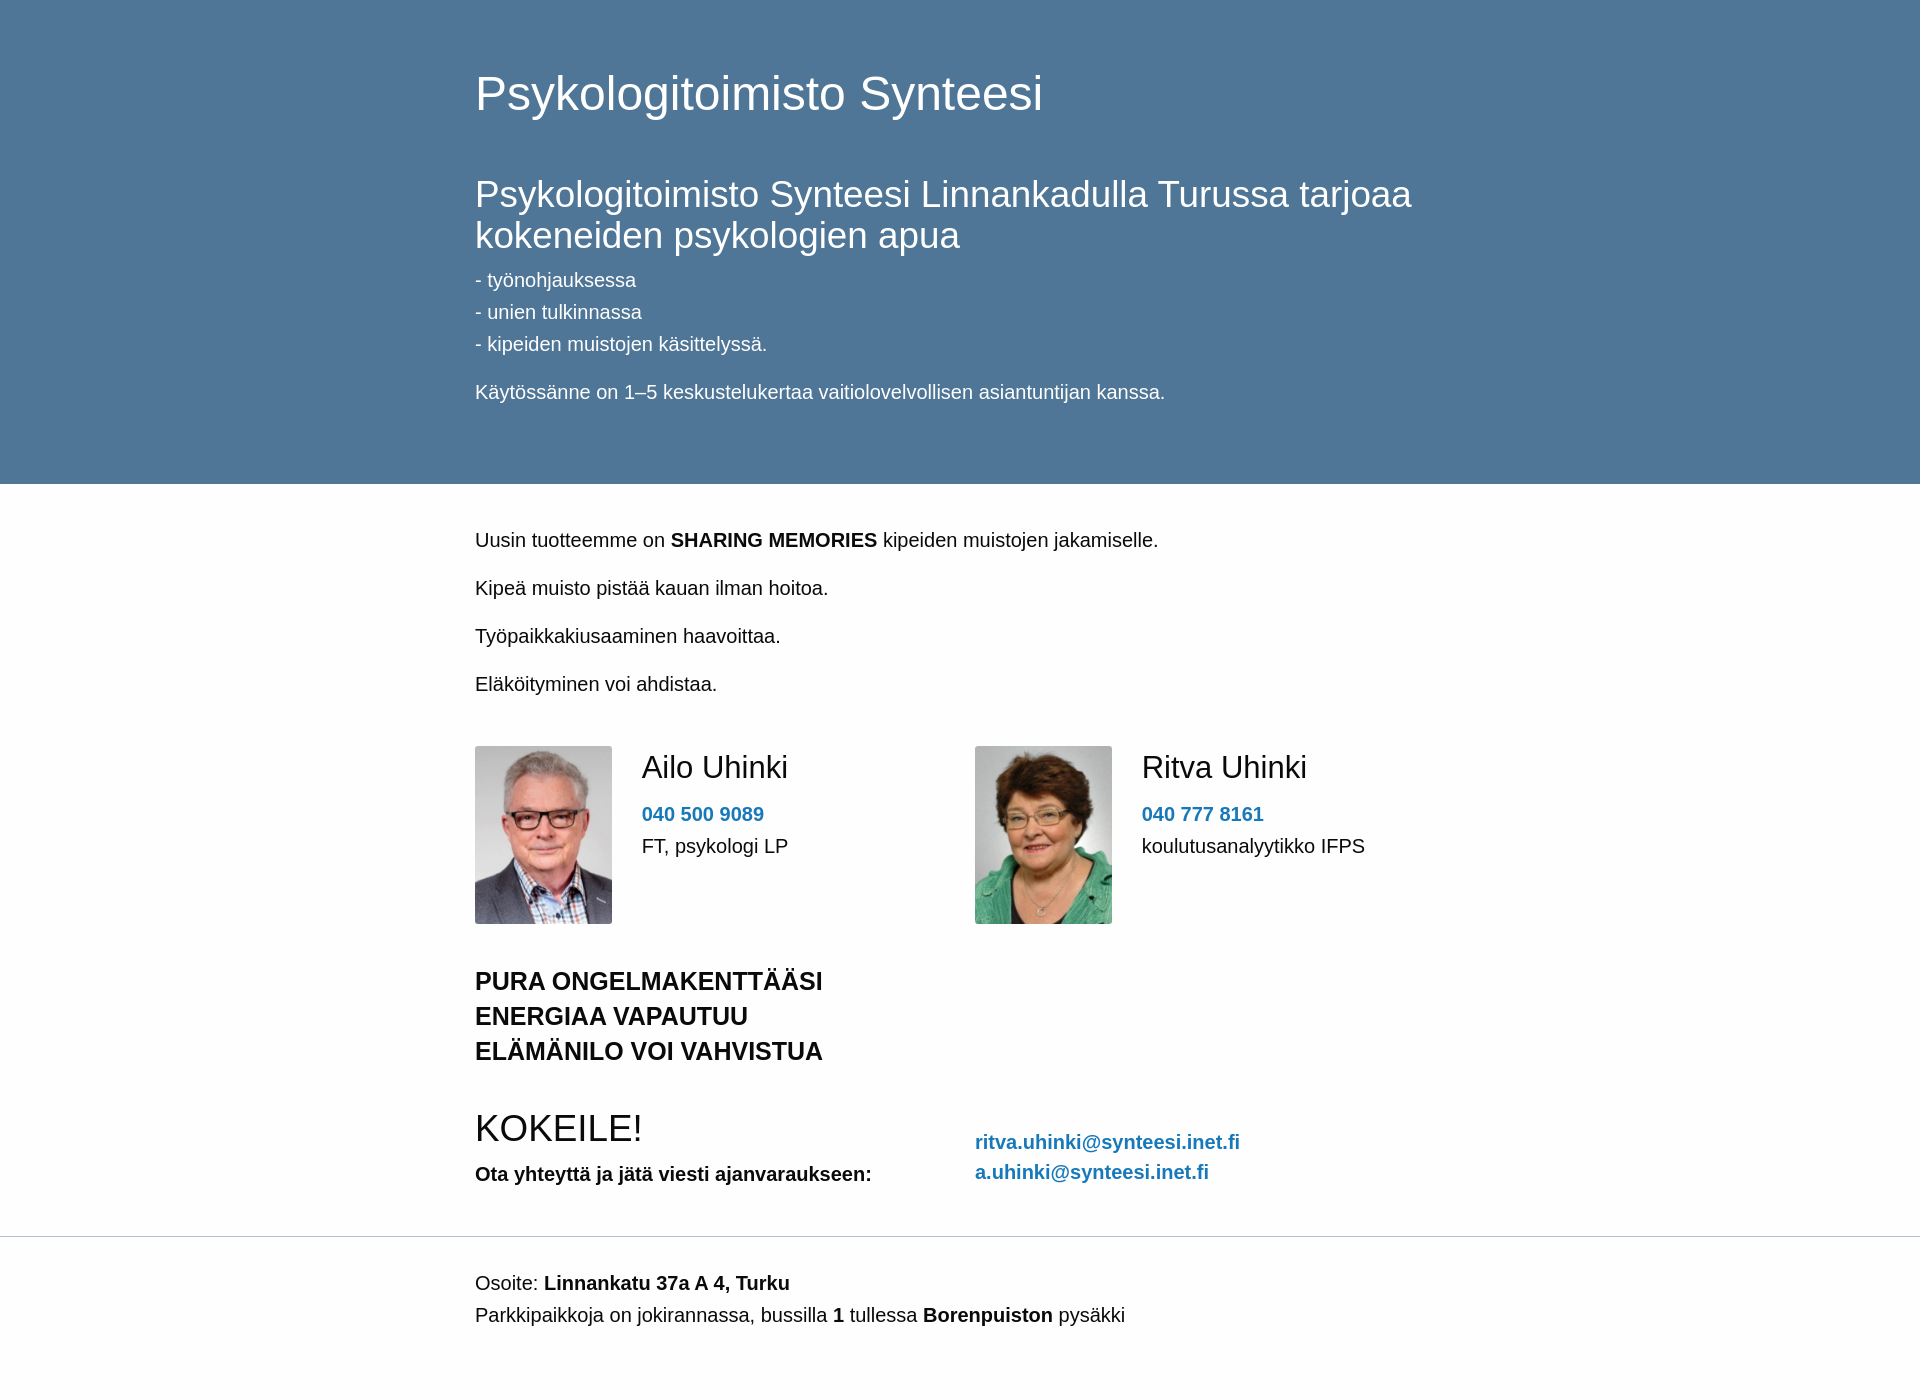 Skärmdump för psykologitoimistosynteesi.fi